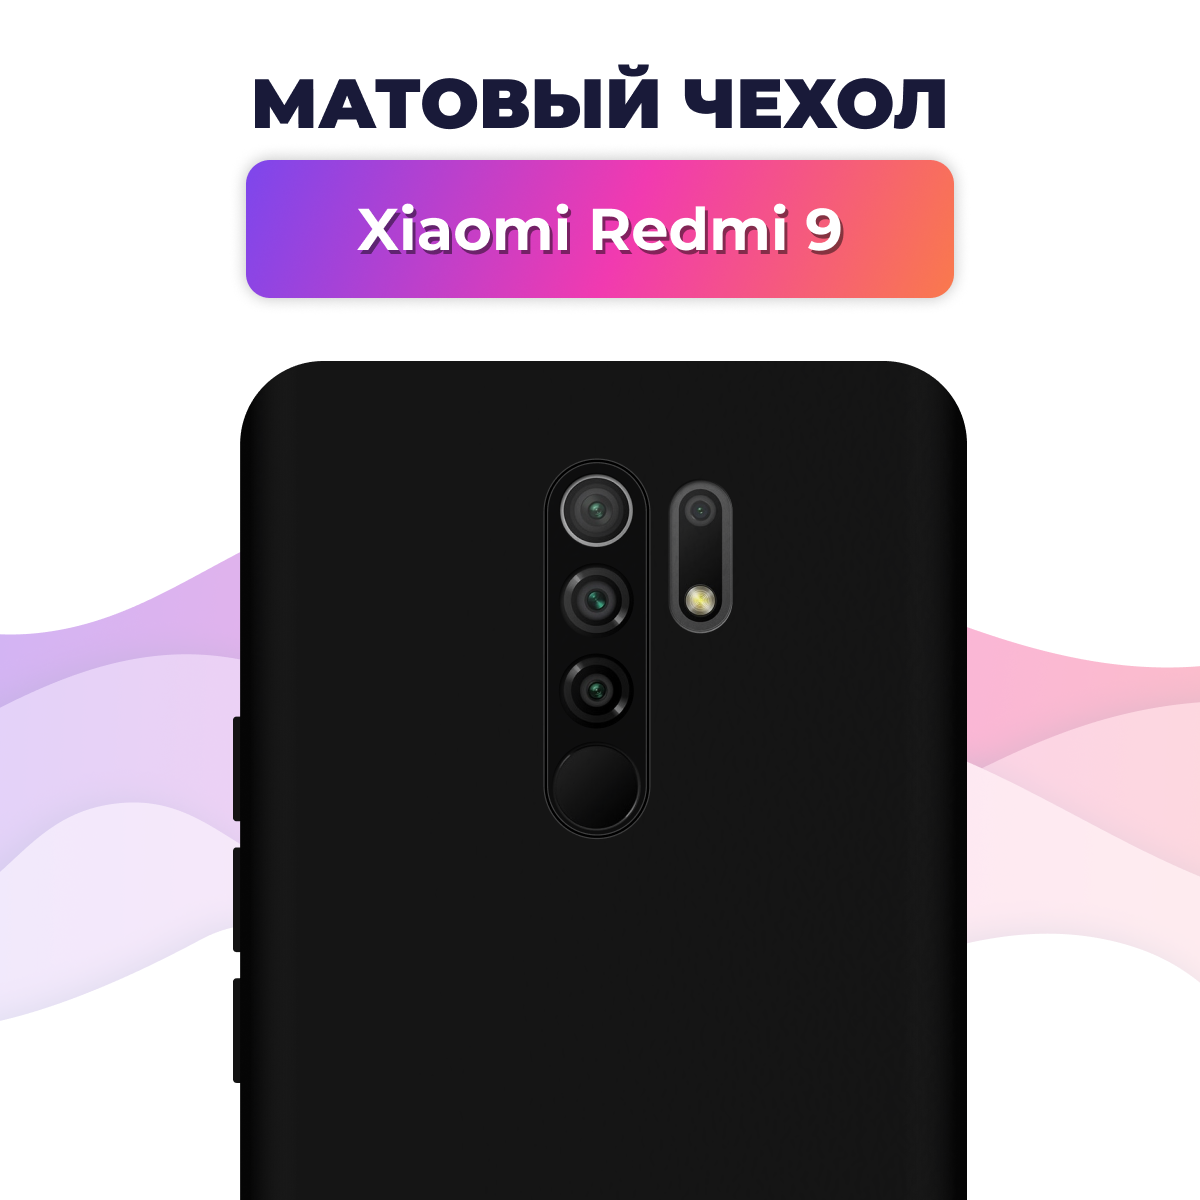 Матовый силиконовый чехол на телефон Xiaomi Redmi 9 / Накладка Rosin для смартфона Сяоми Редми 9 / Тонкий бампер Soft Touch, Черный